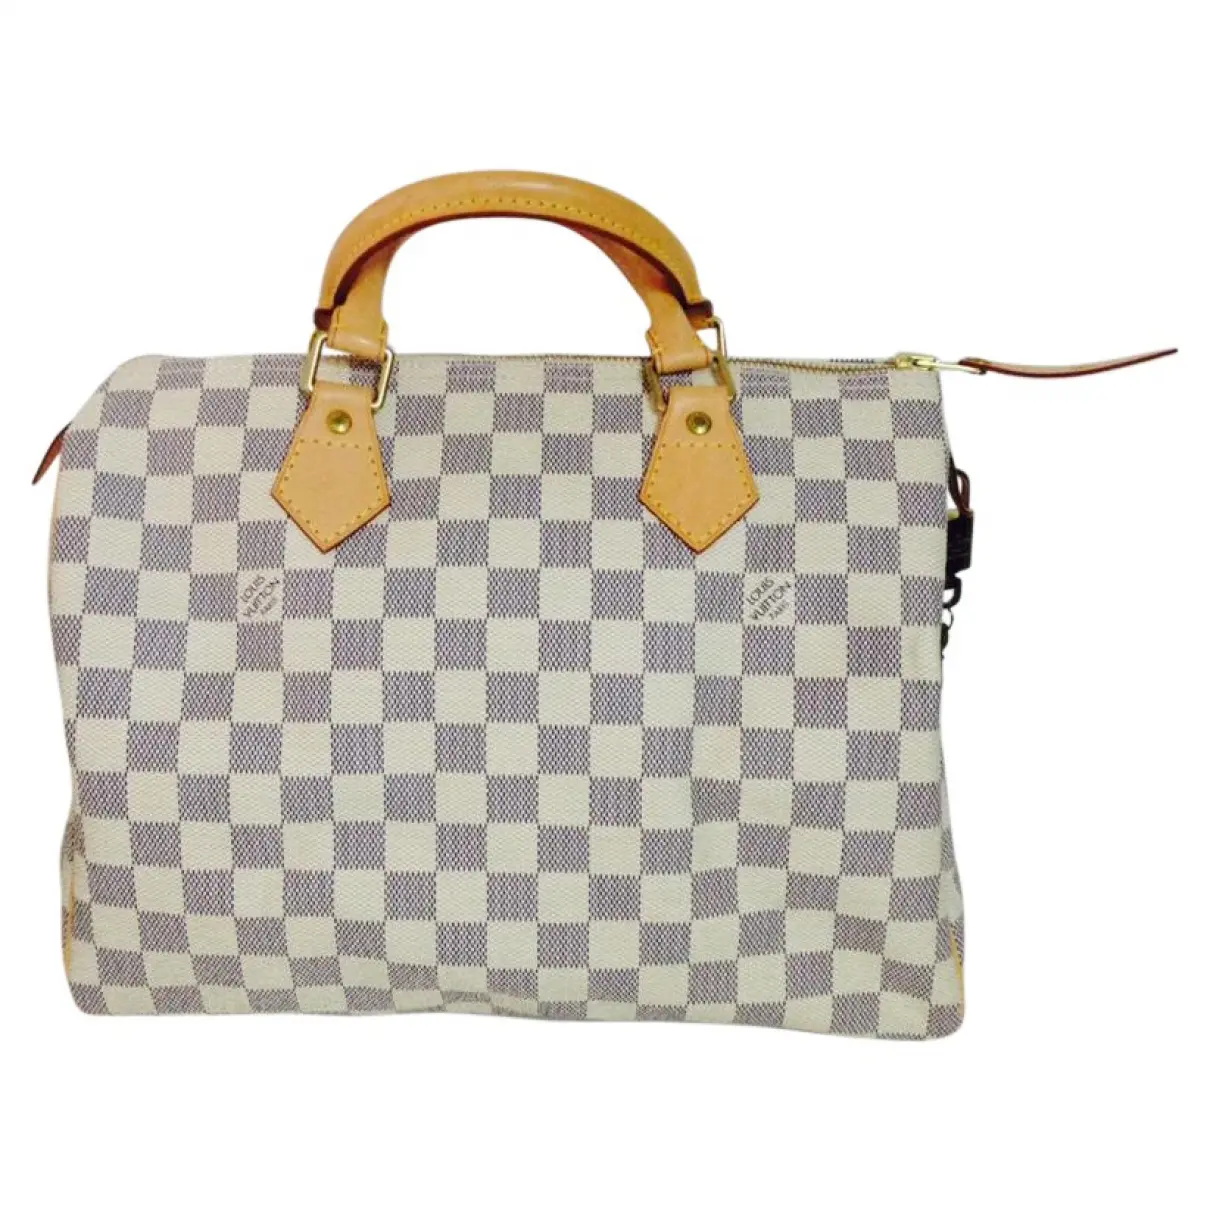 Beige Leather Handbag Speedy Louis Vuitton